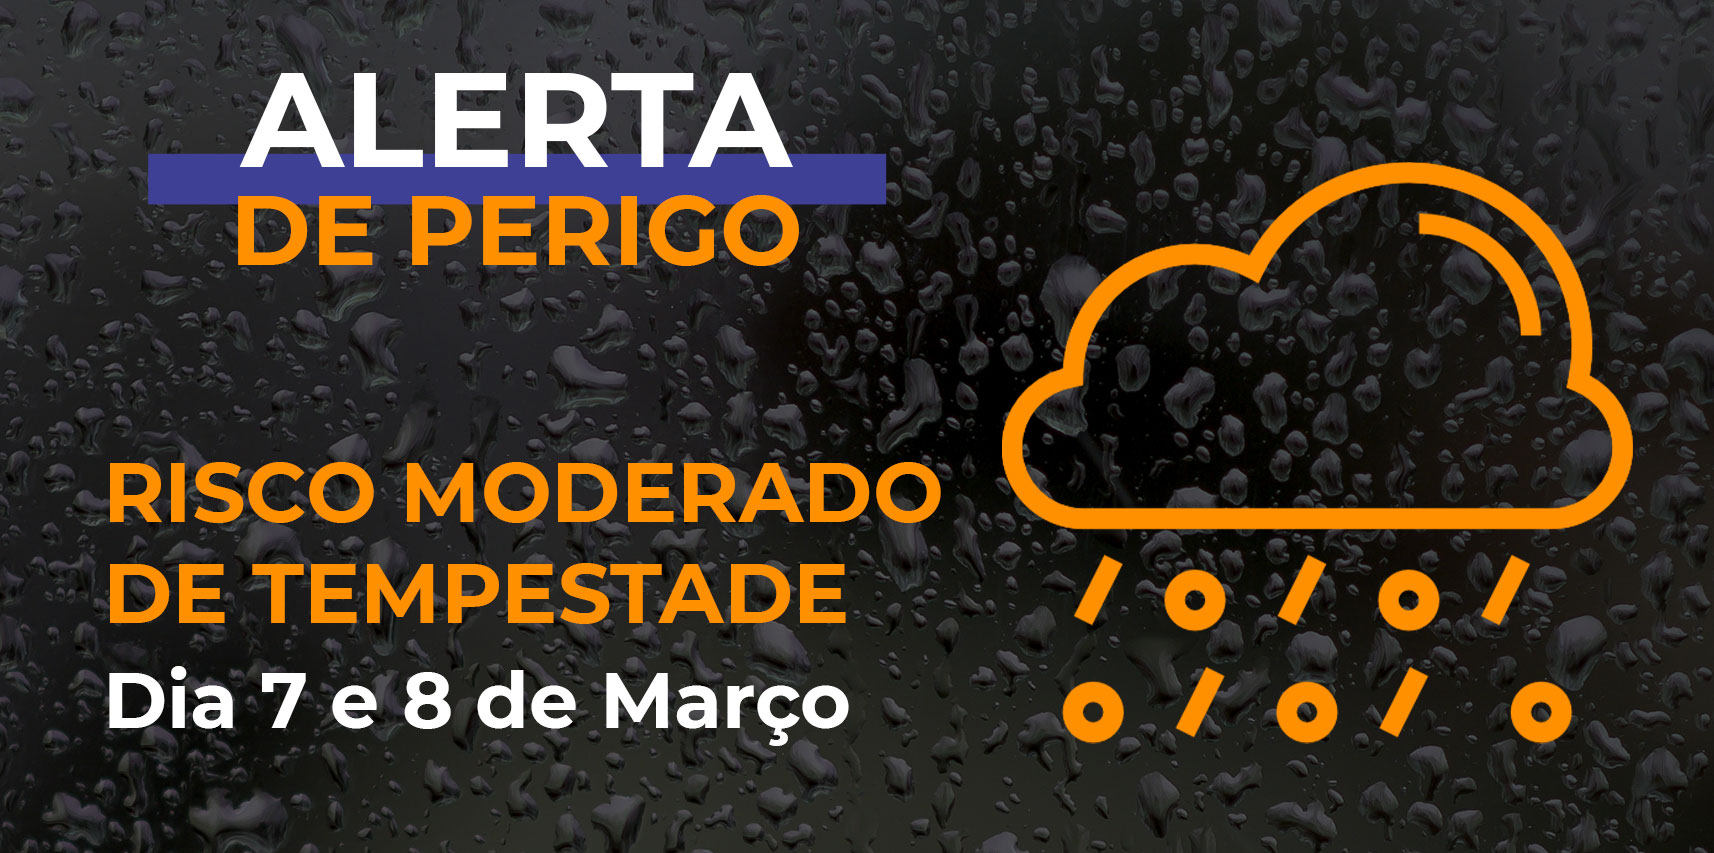 Defesa Civil de Vargem Alta emite alerta para o risco moderado de tempestade para os dias 7 e 8 de março